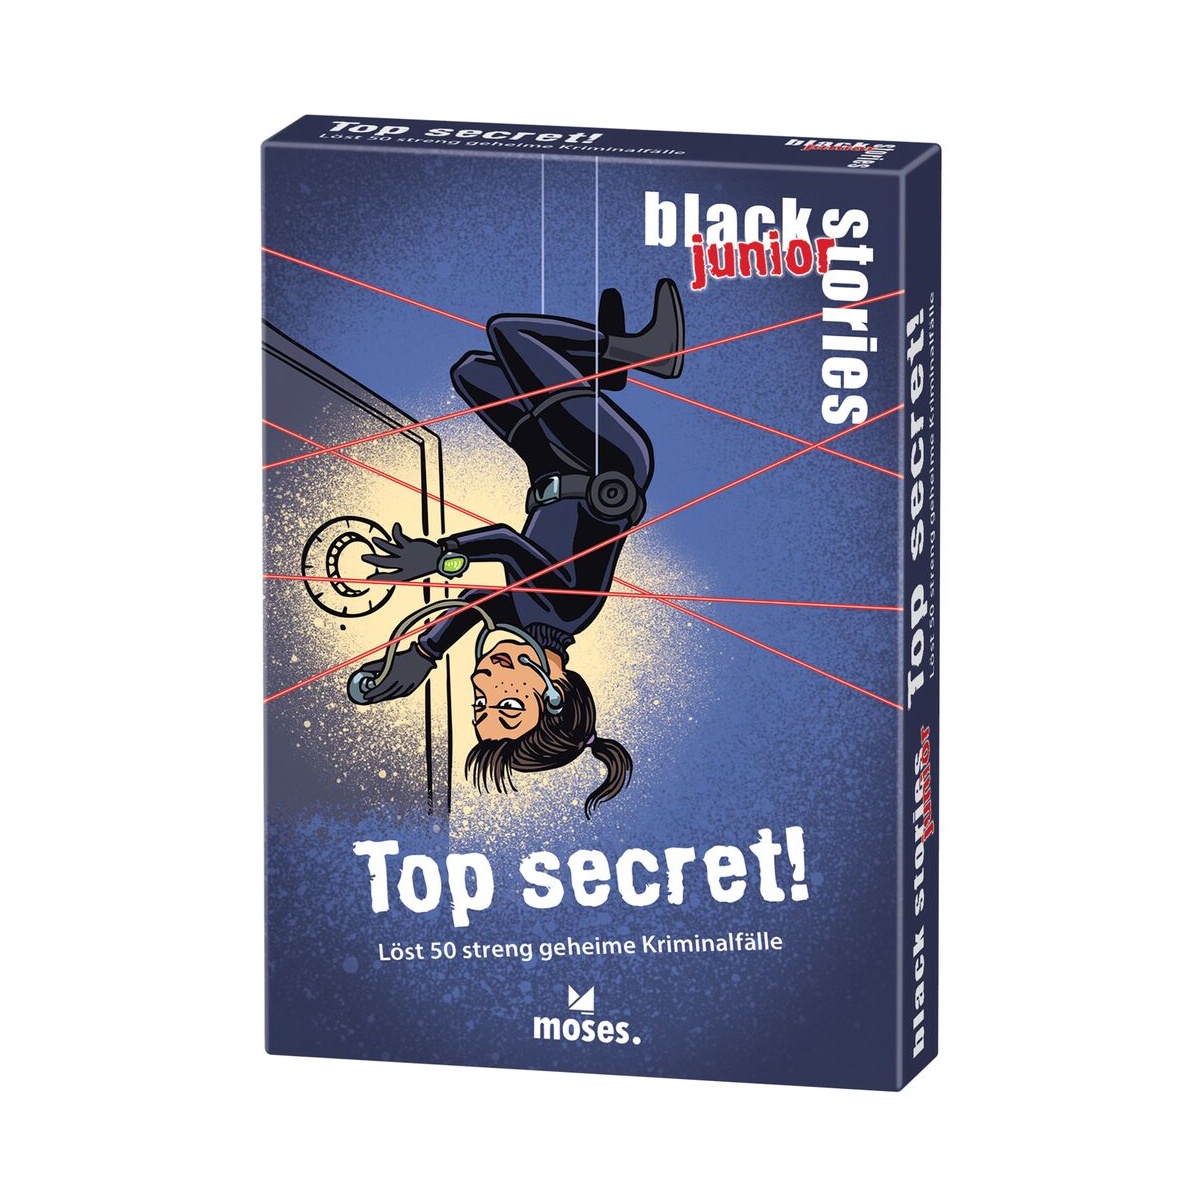 Black Stories junior Top secret! von Moses